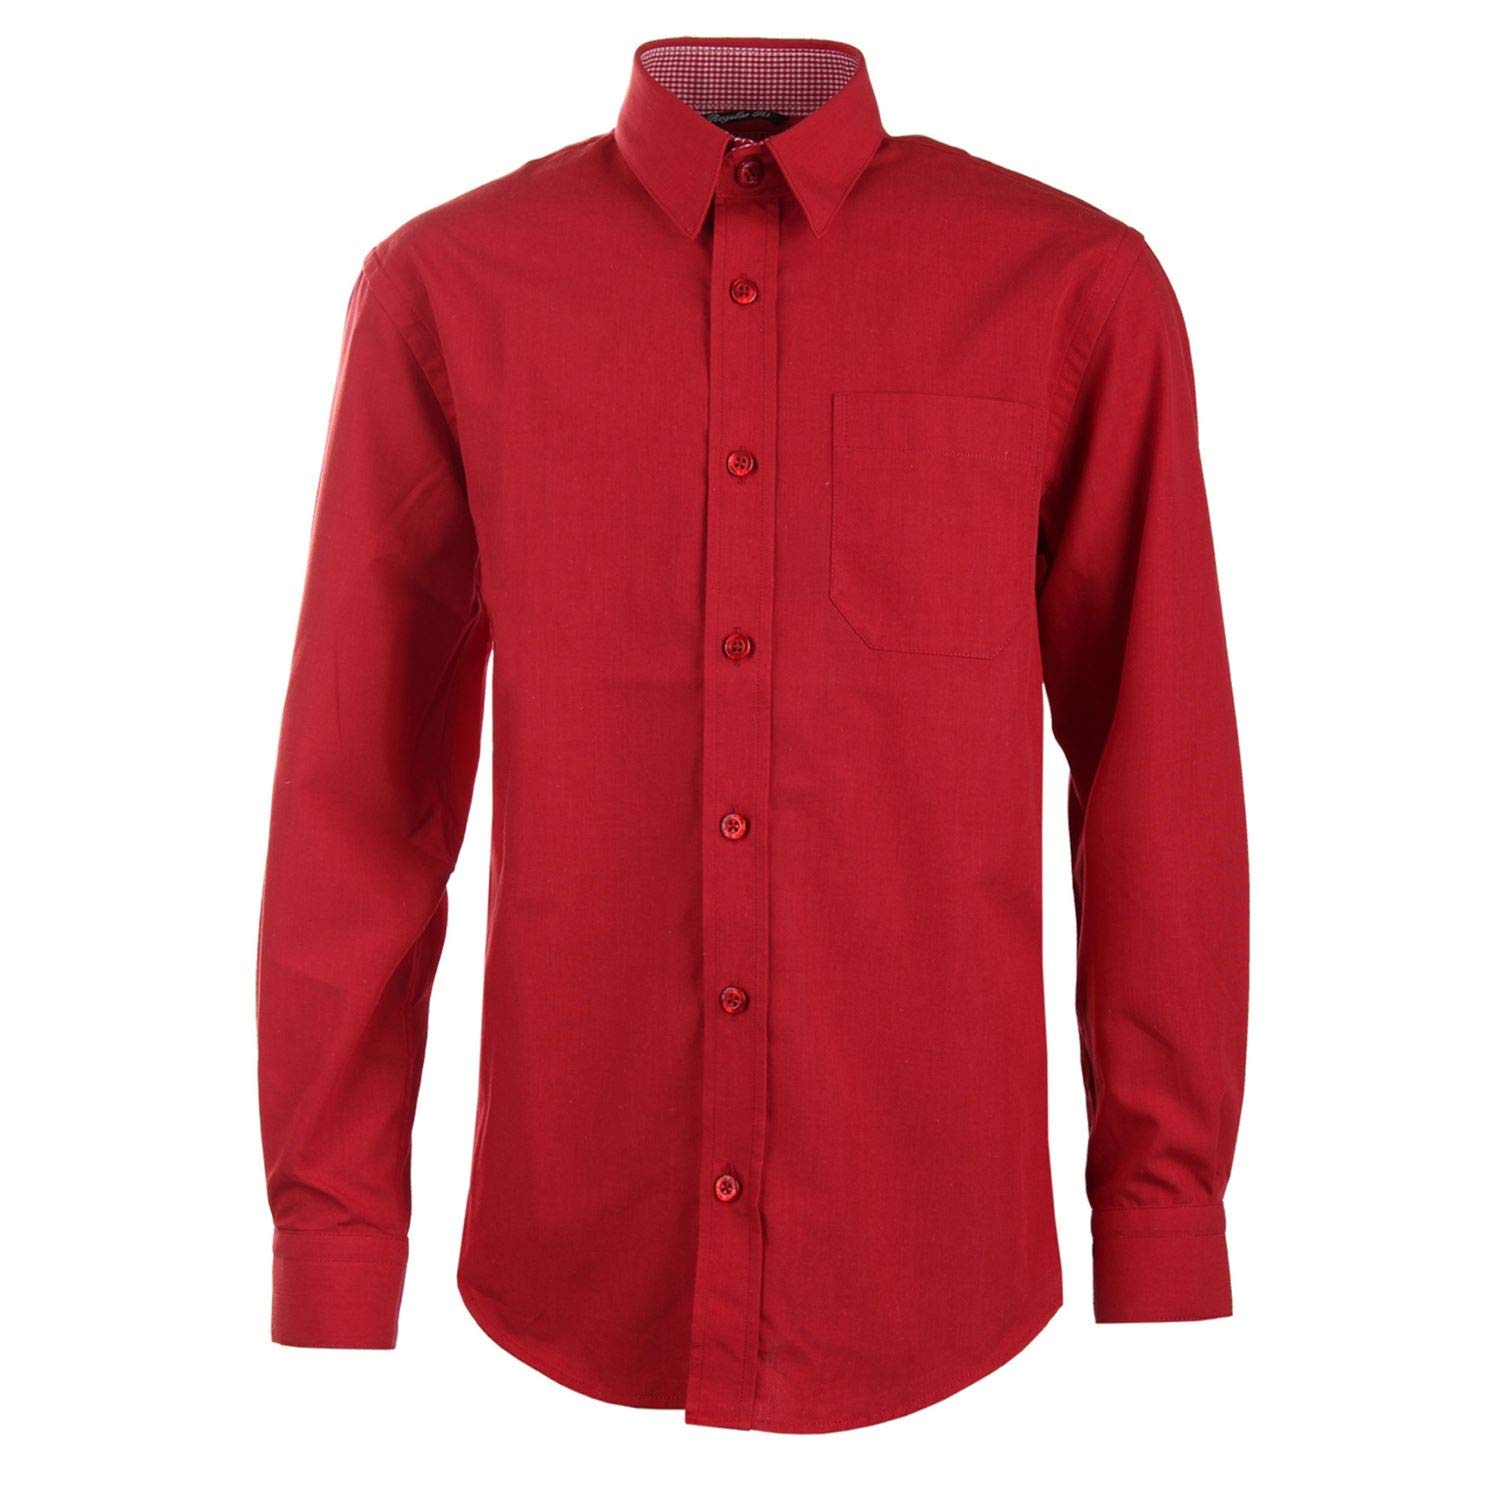 G.O.L. - Festliches Langarmhemd Jungen (Hemd ohne Krawatte), rot,164 - Größe 164